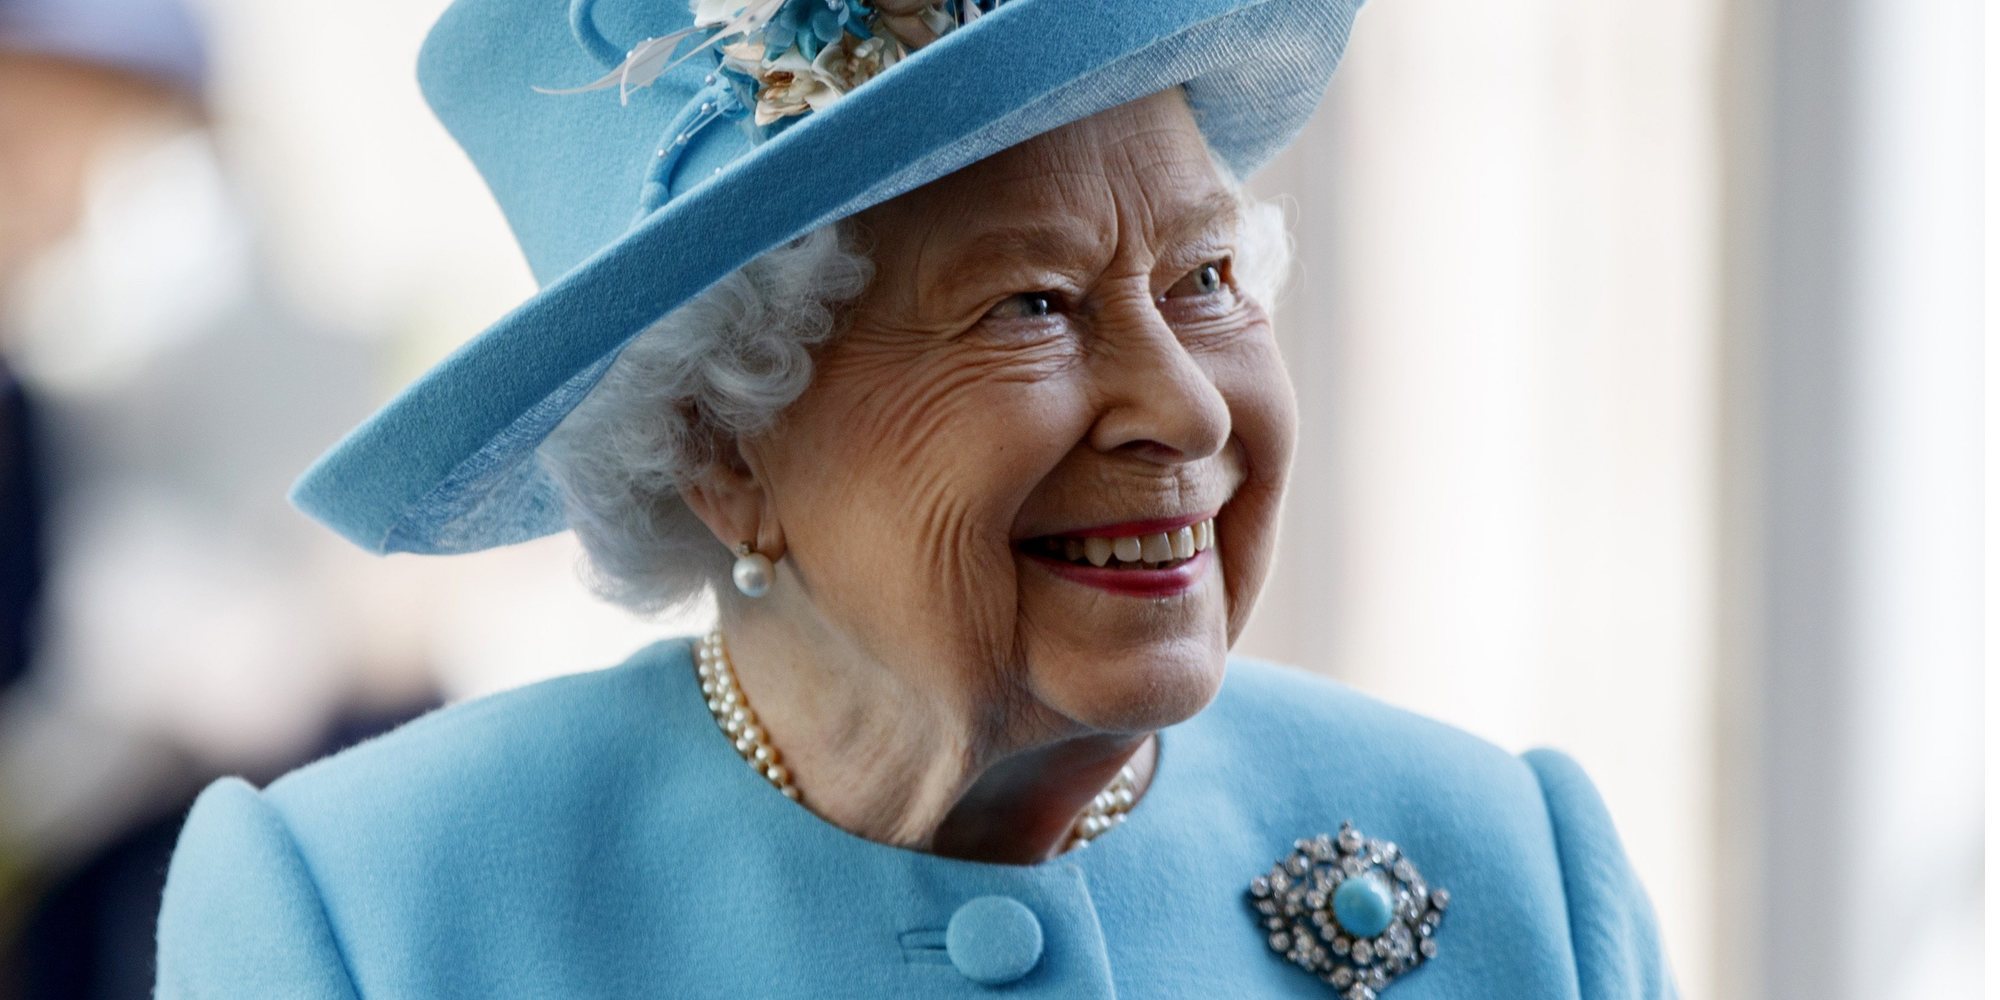 La Reina Isabel felicita el Año 2020 con el ya tradicional posado junto a los tres herederos al trono